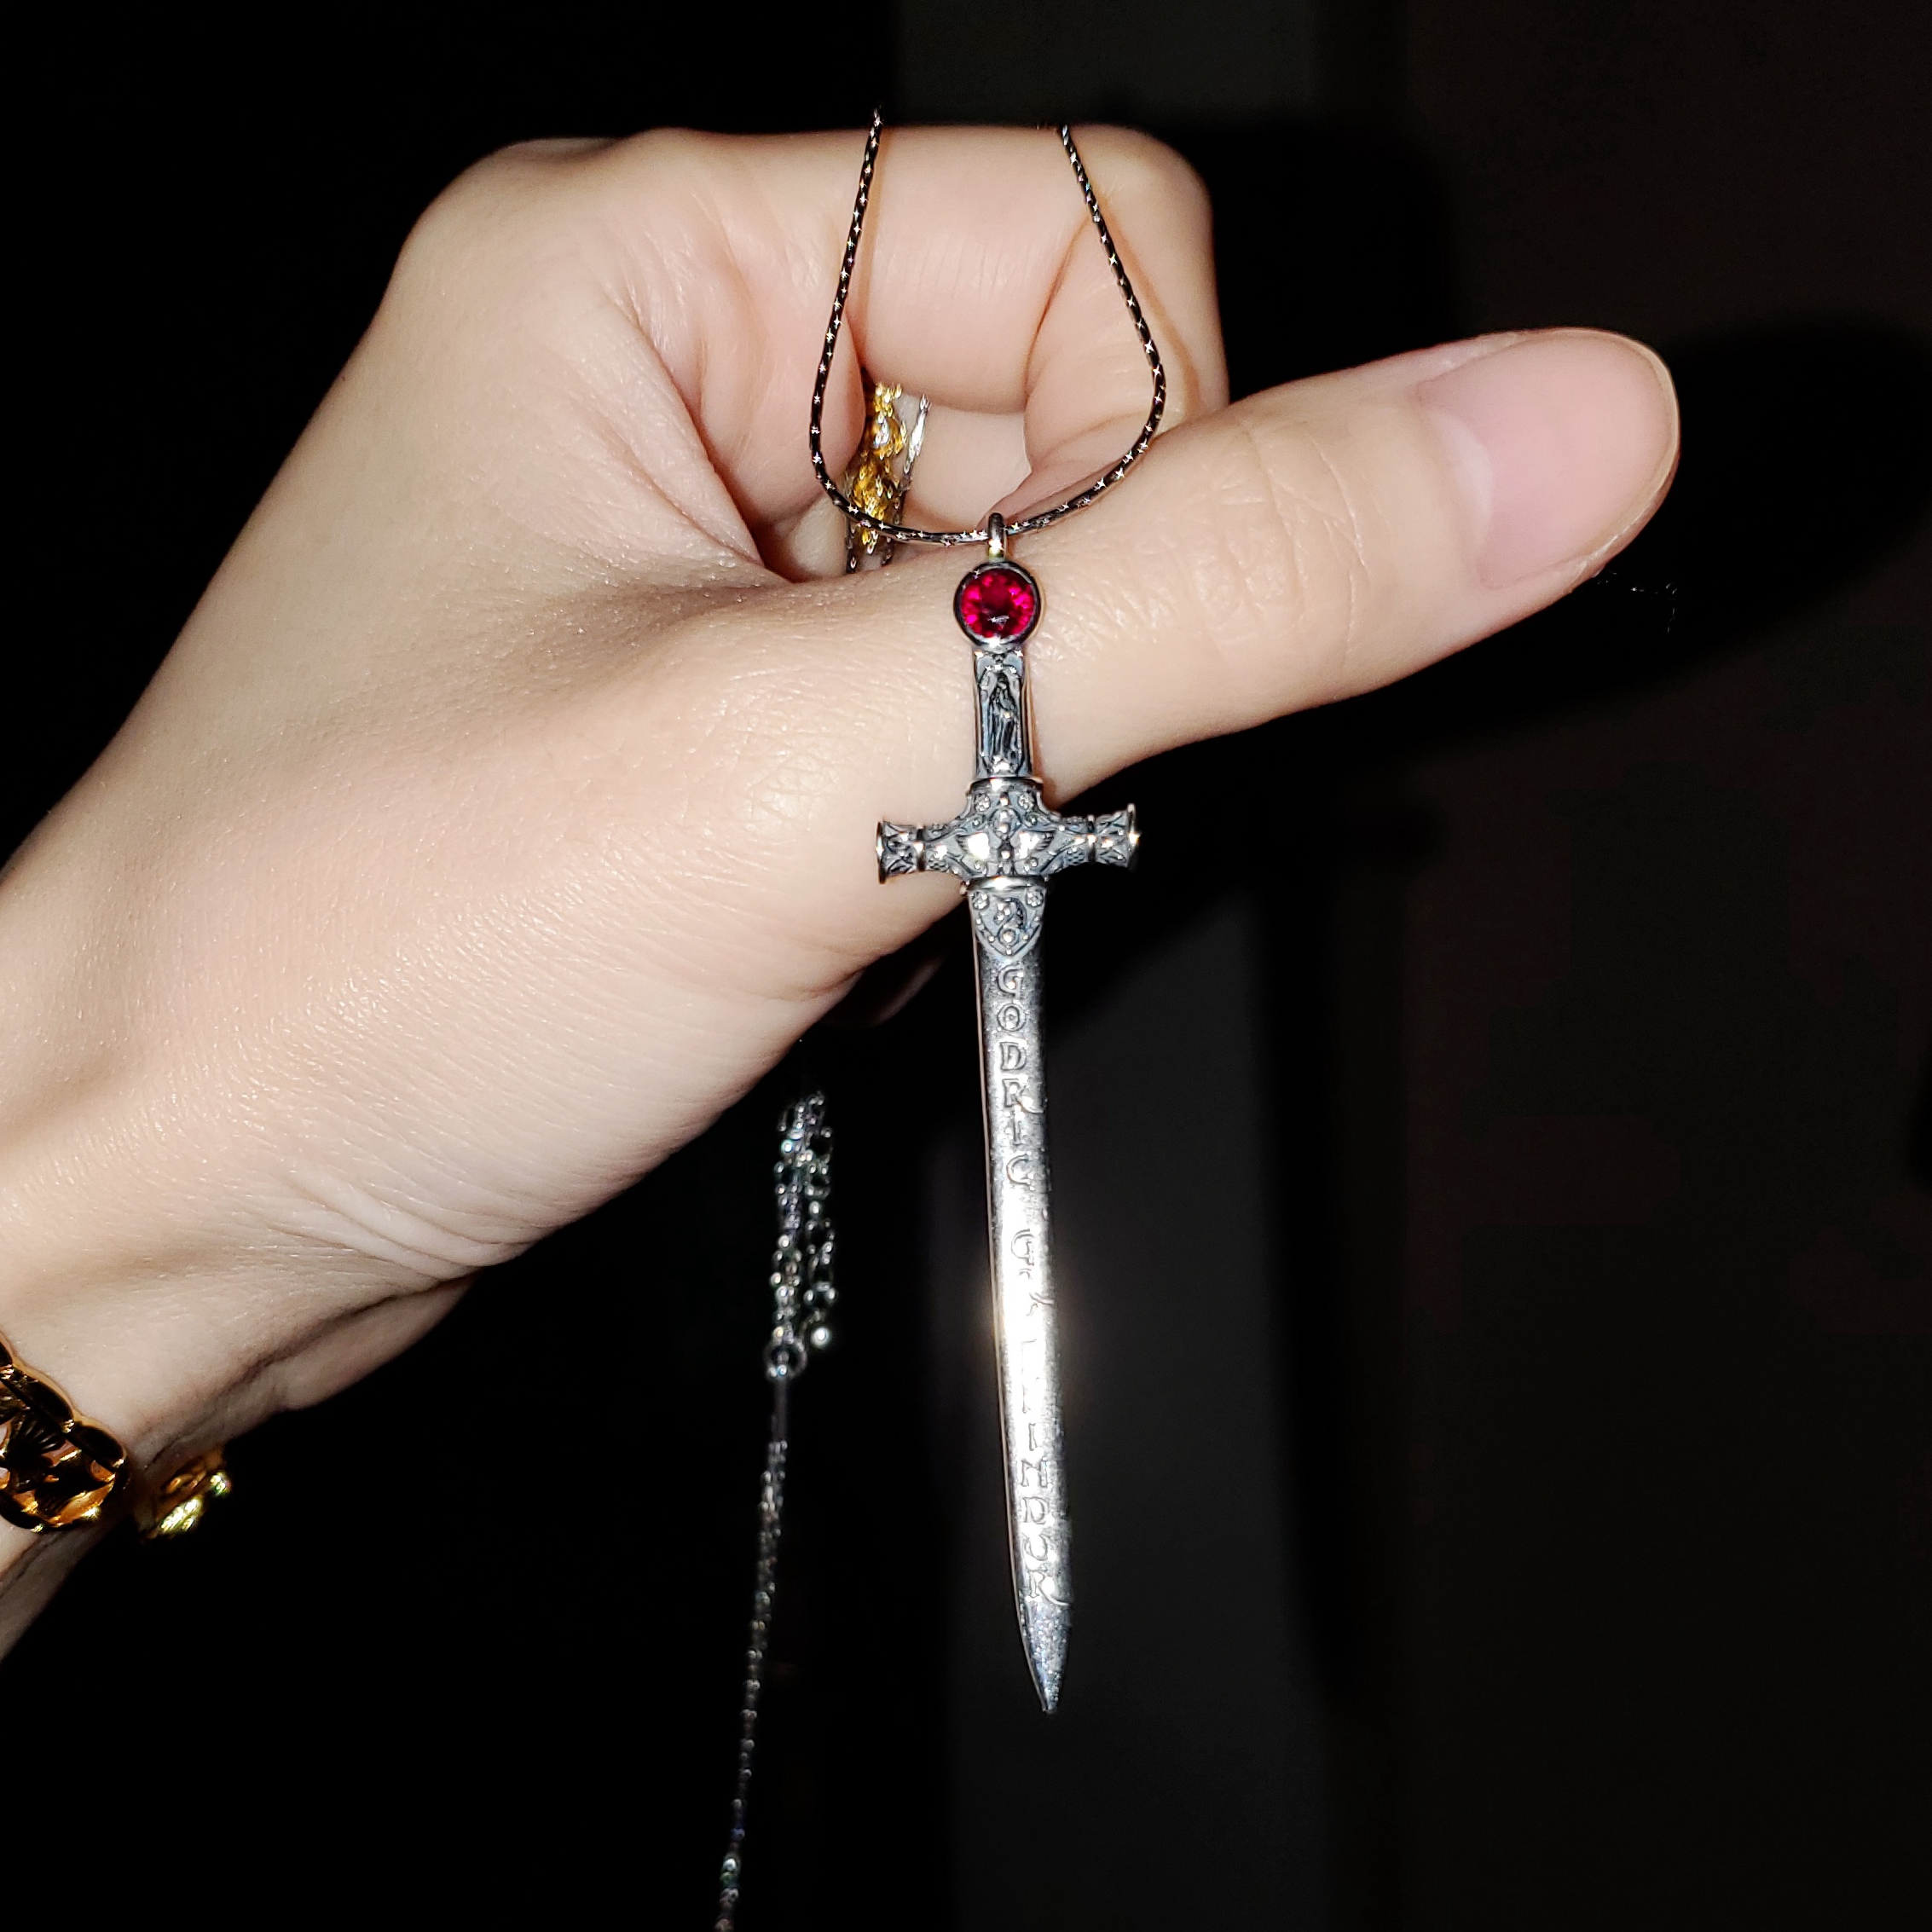 格兰芬多宝剑Gryffindor's sword哈利波特人造红宝石白铜吊坠项链